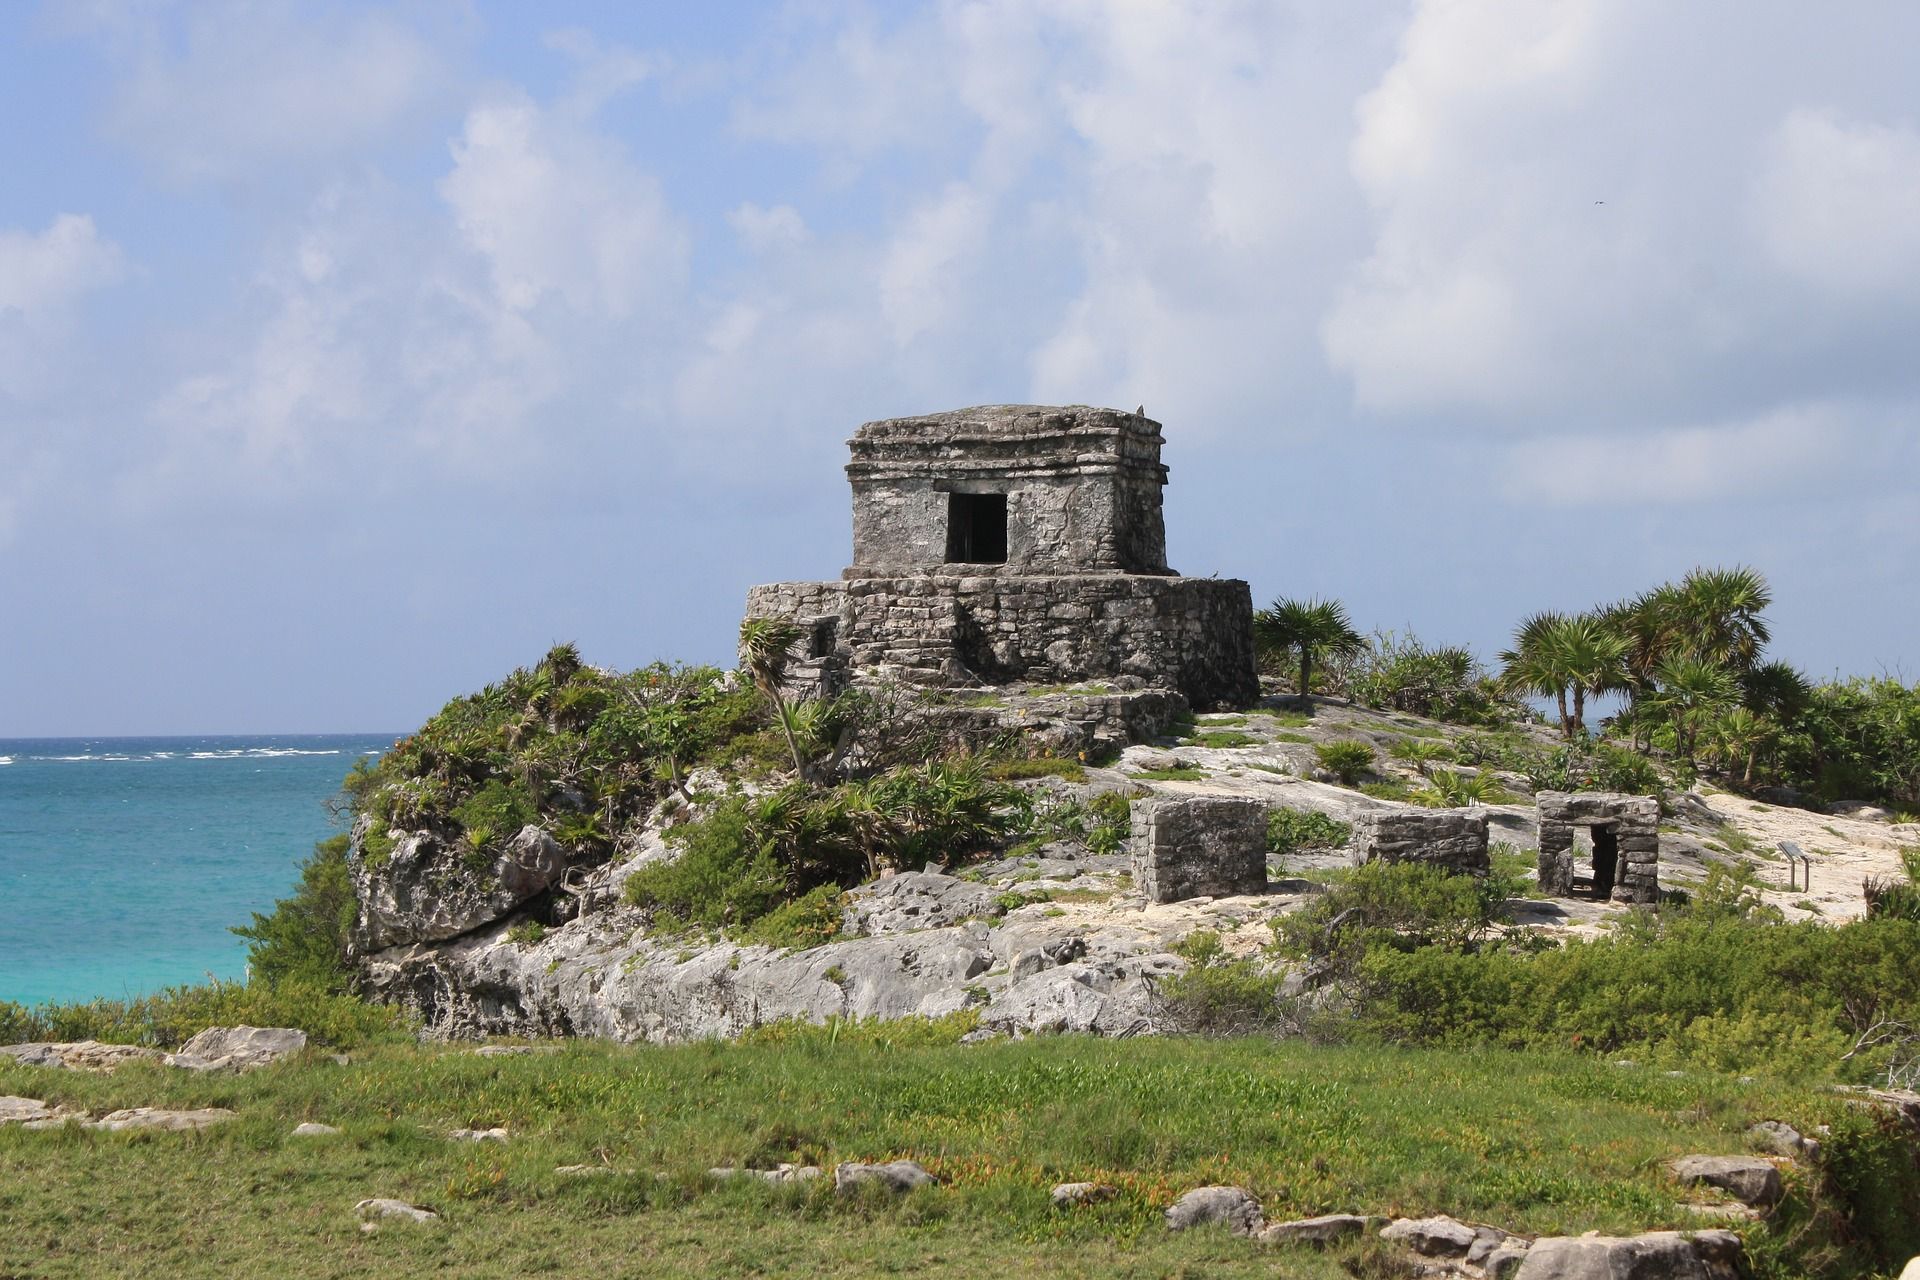 Ruins of Tulum, Mexico